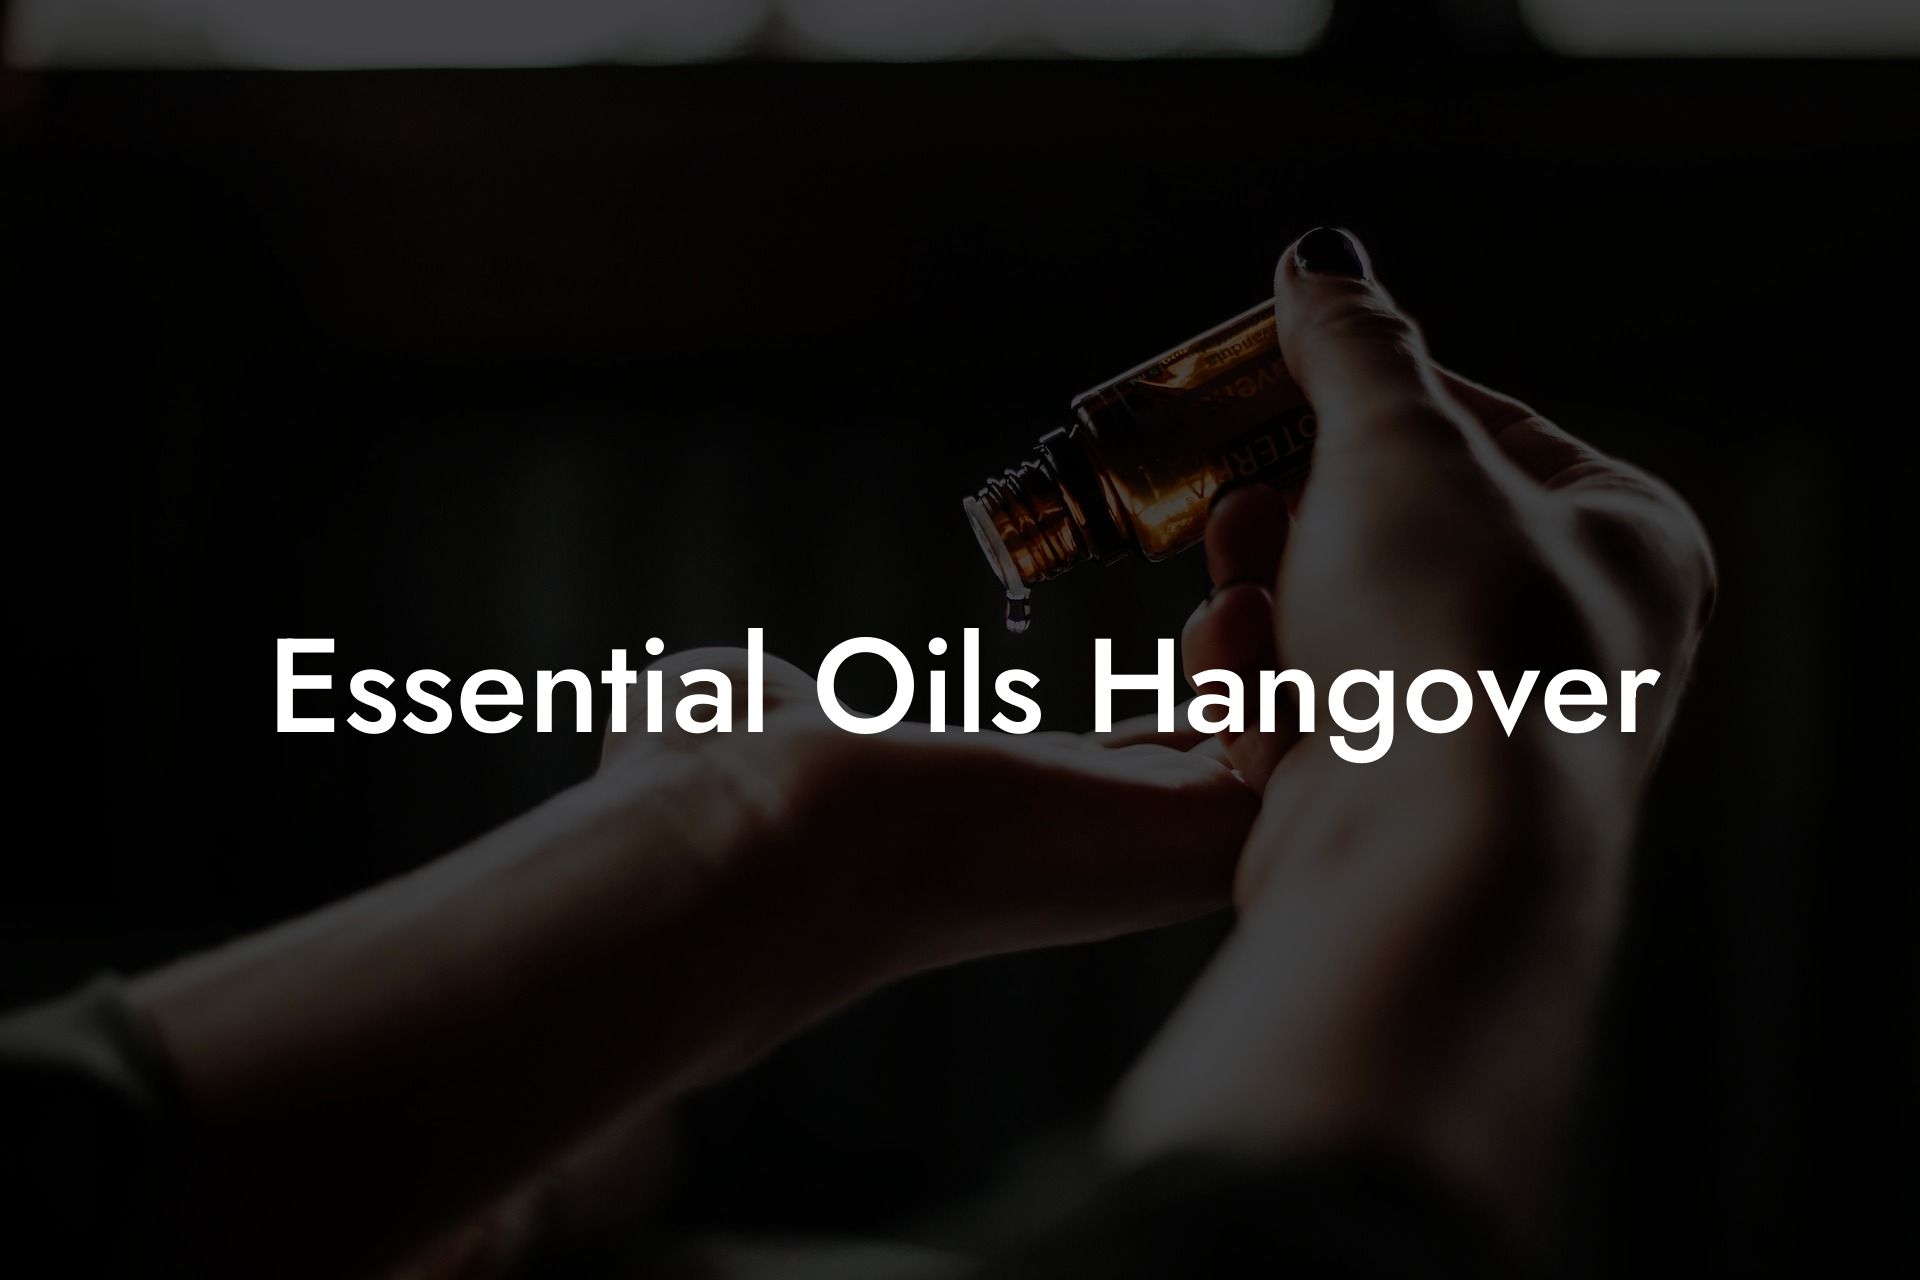 Essential Oils Hangover